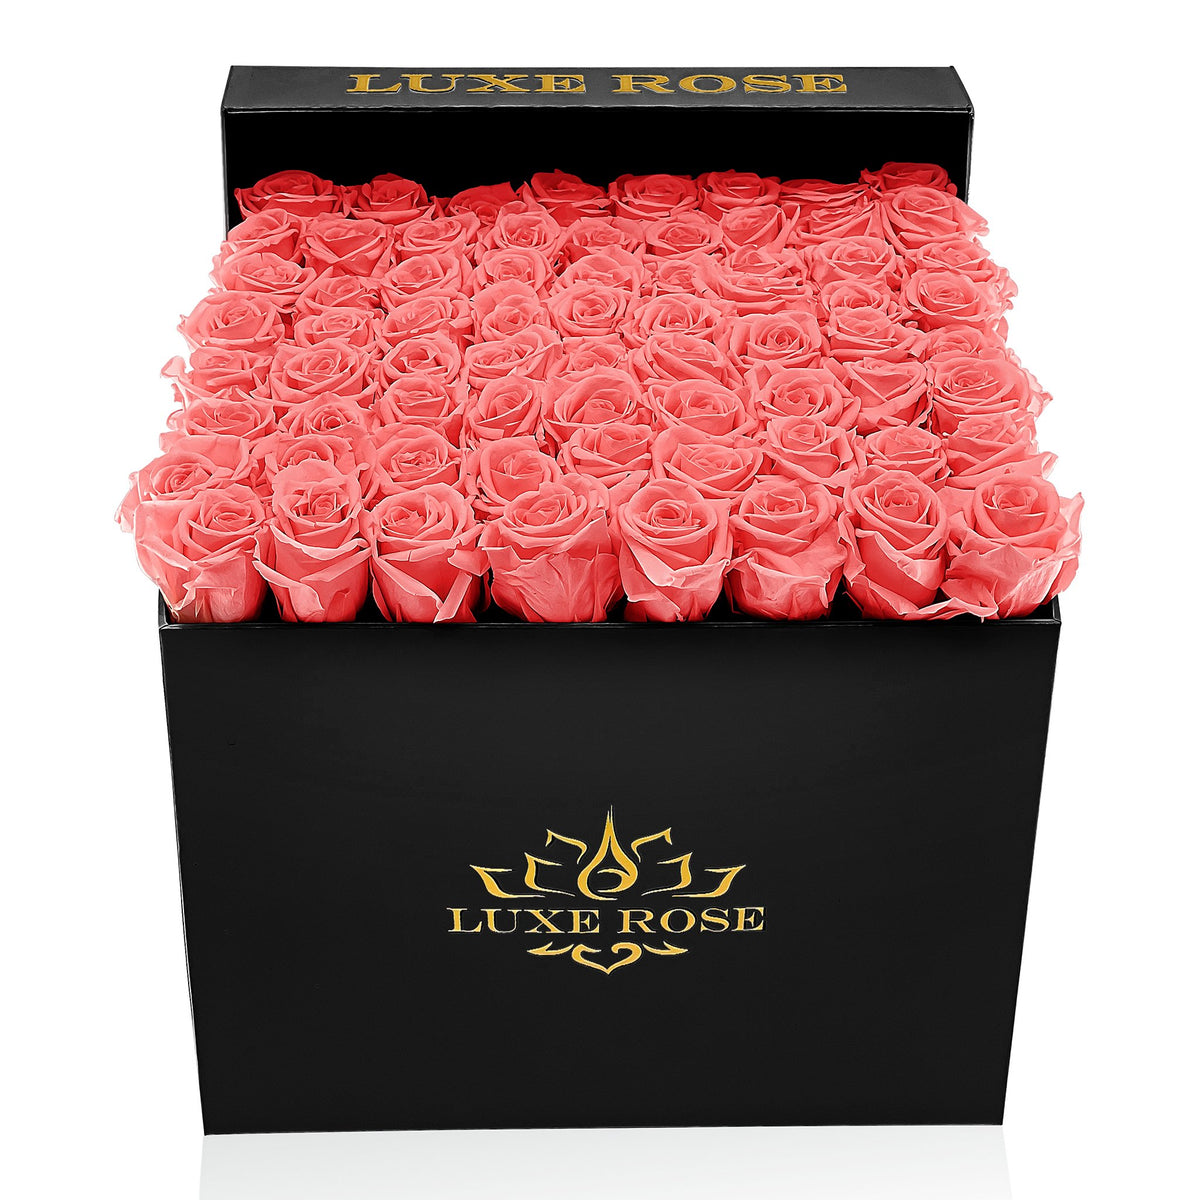 Preserved Roses Large Box | Cherry Blossom - Black - Roses